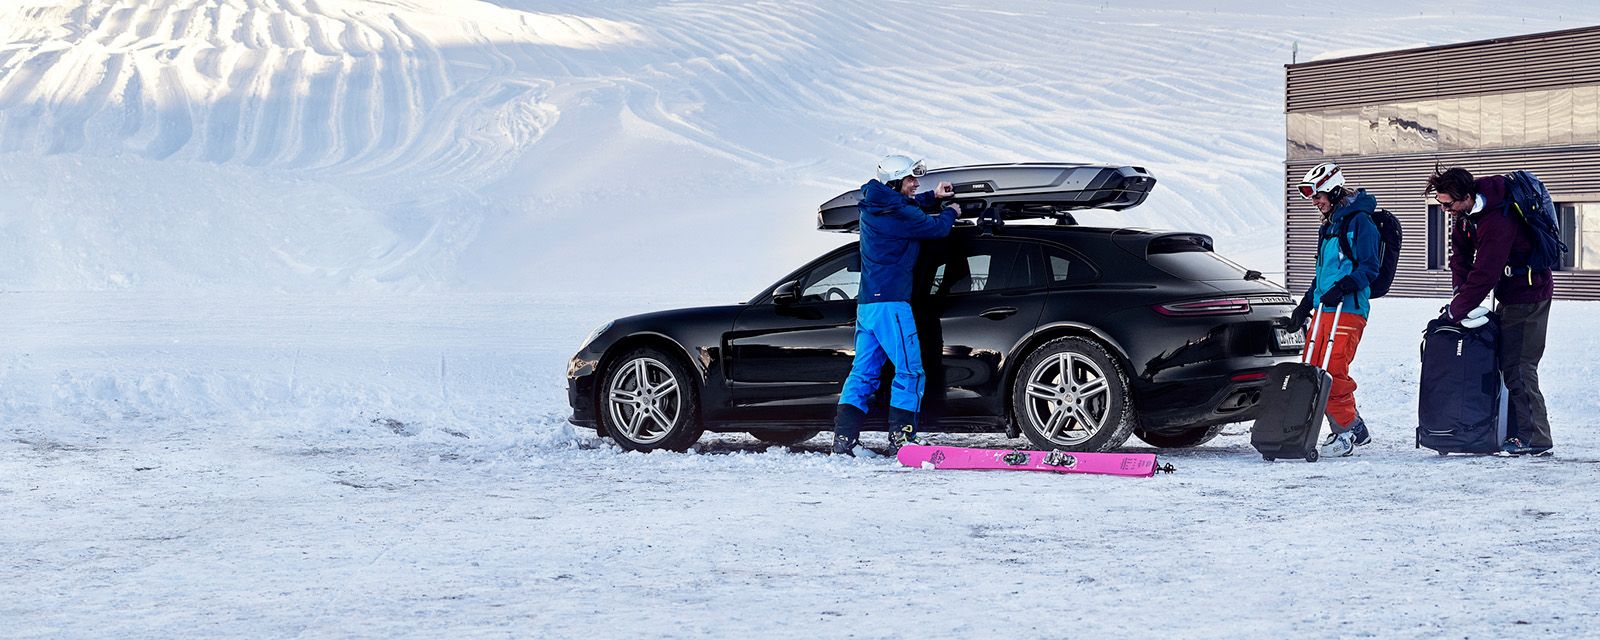 Nella neve, due persone con attrezzatura da sci caricano le loro cose su un'auto e un box da tetto.